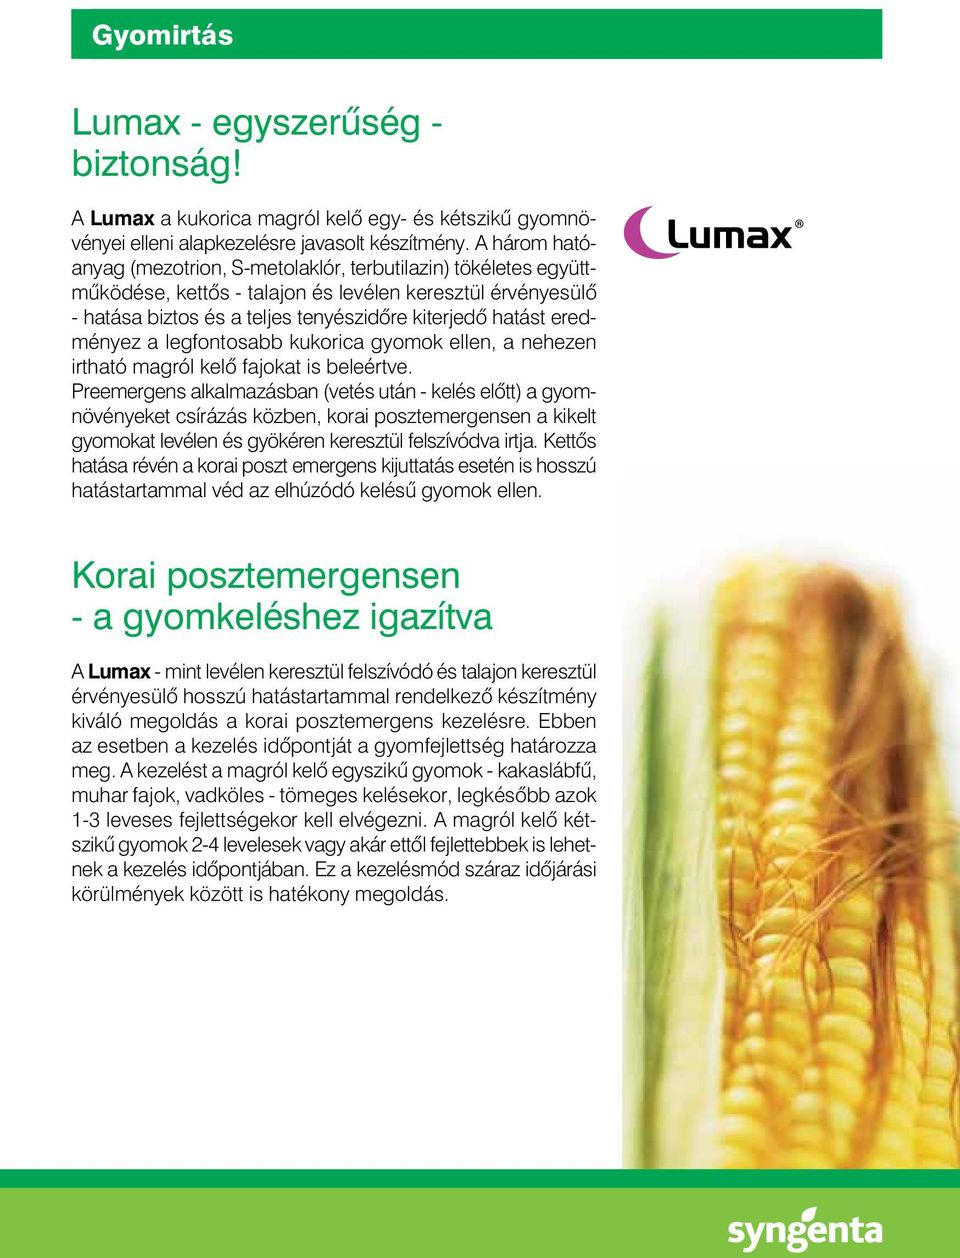 eredményez a legfontosabb kukorica gyomok ellen, a nehezen irtható magról kelô fajokat is beleértve.